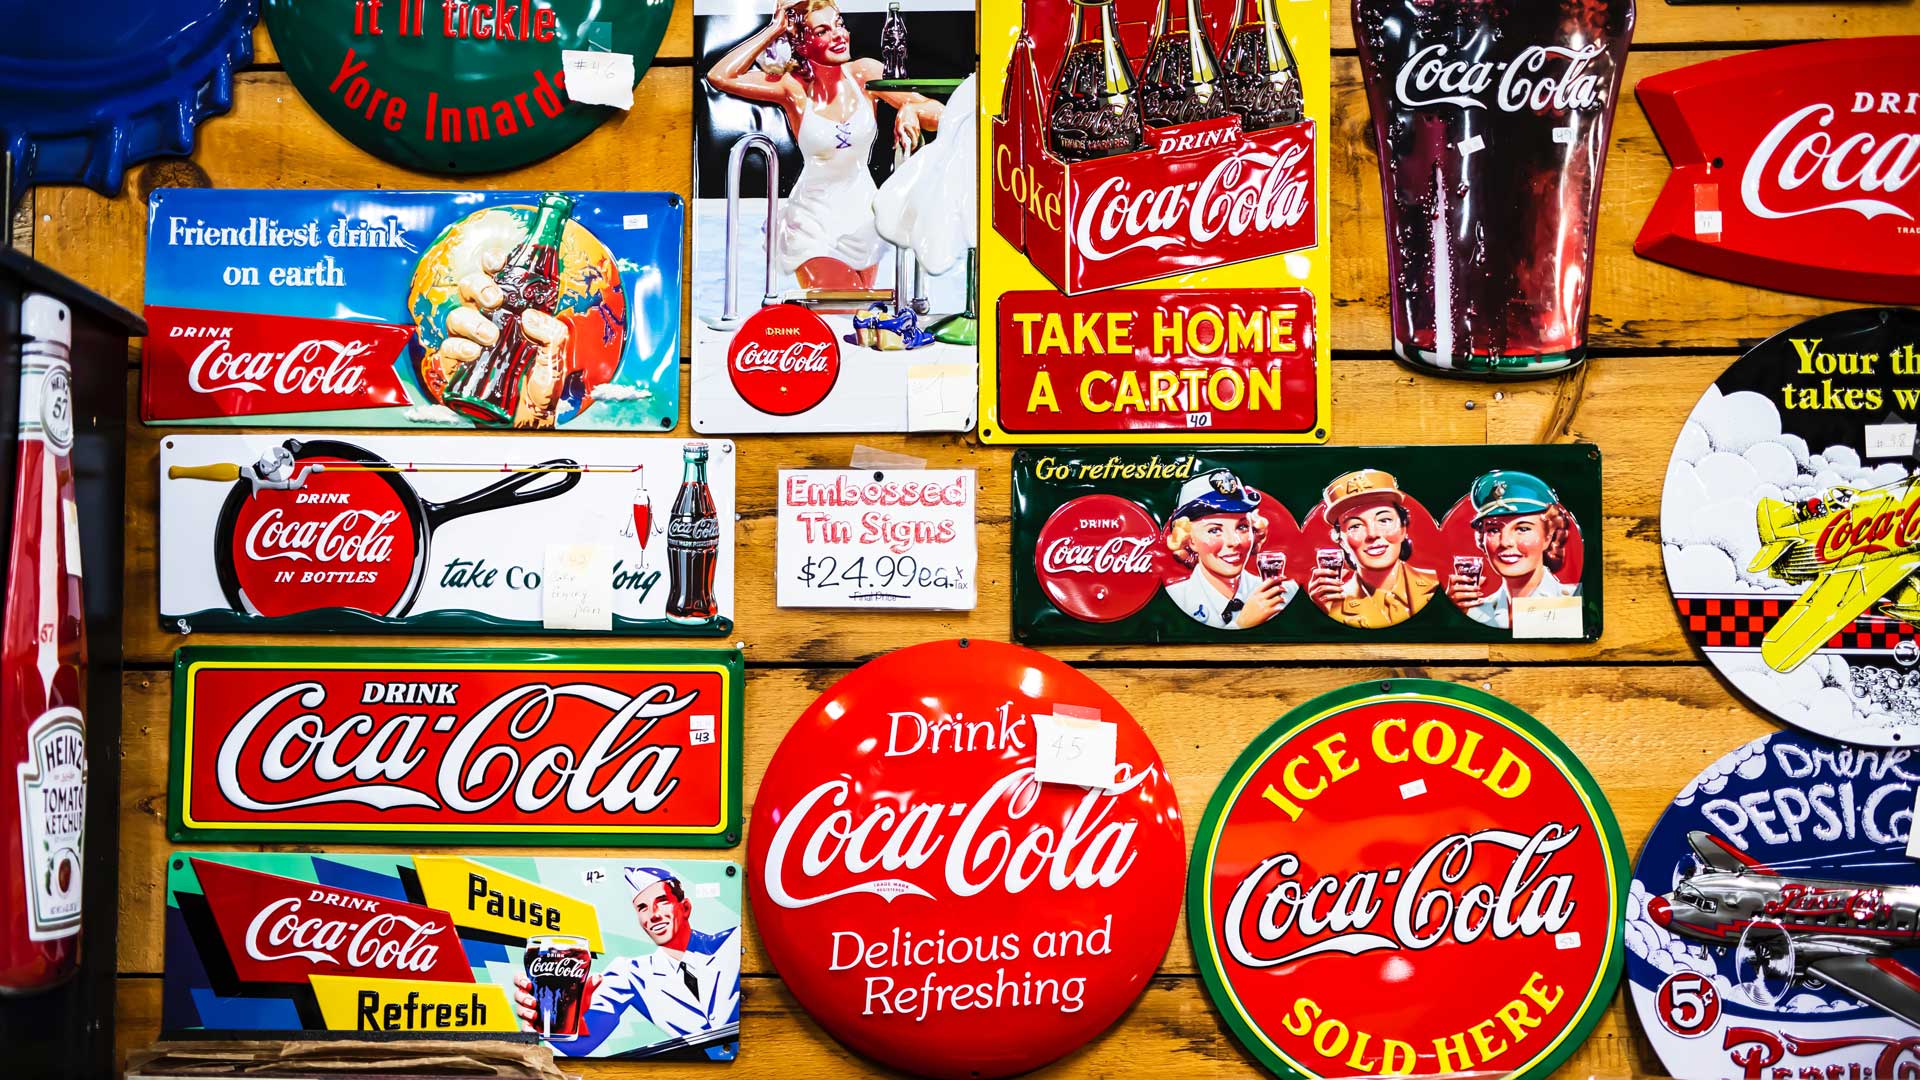 coca-cola signs